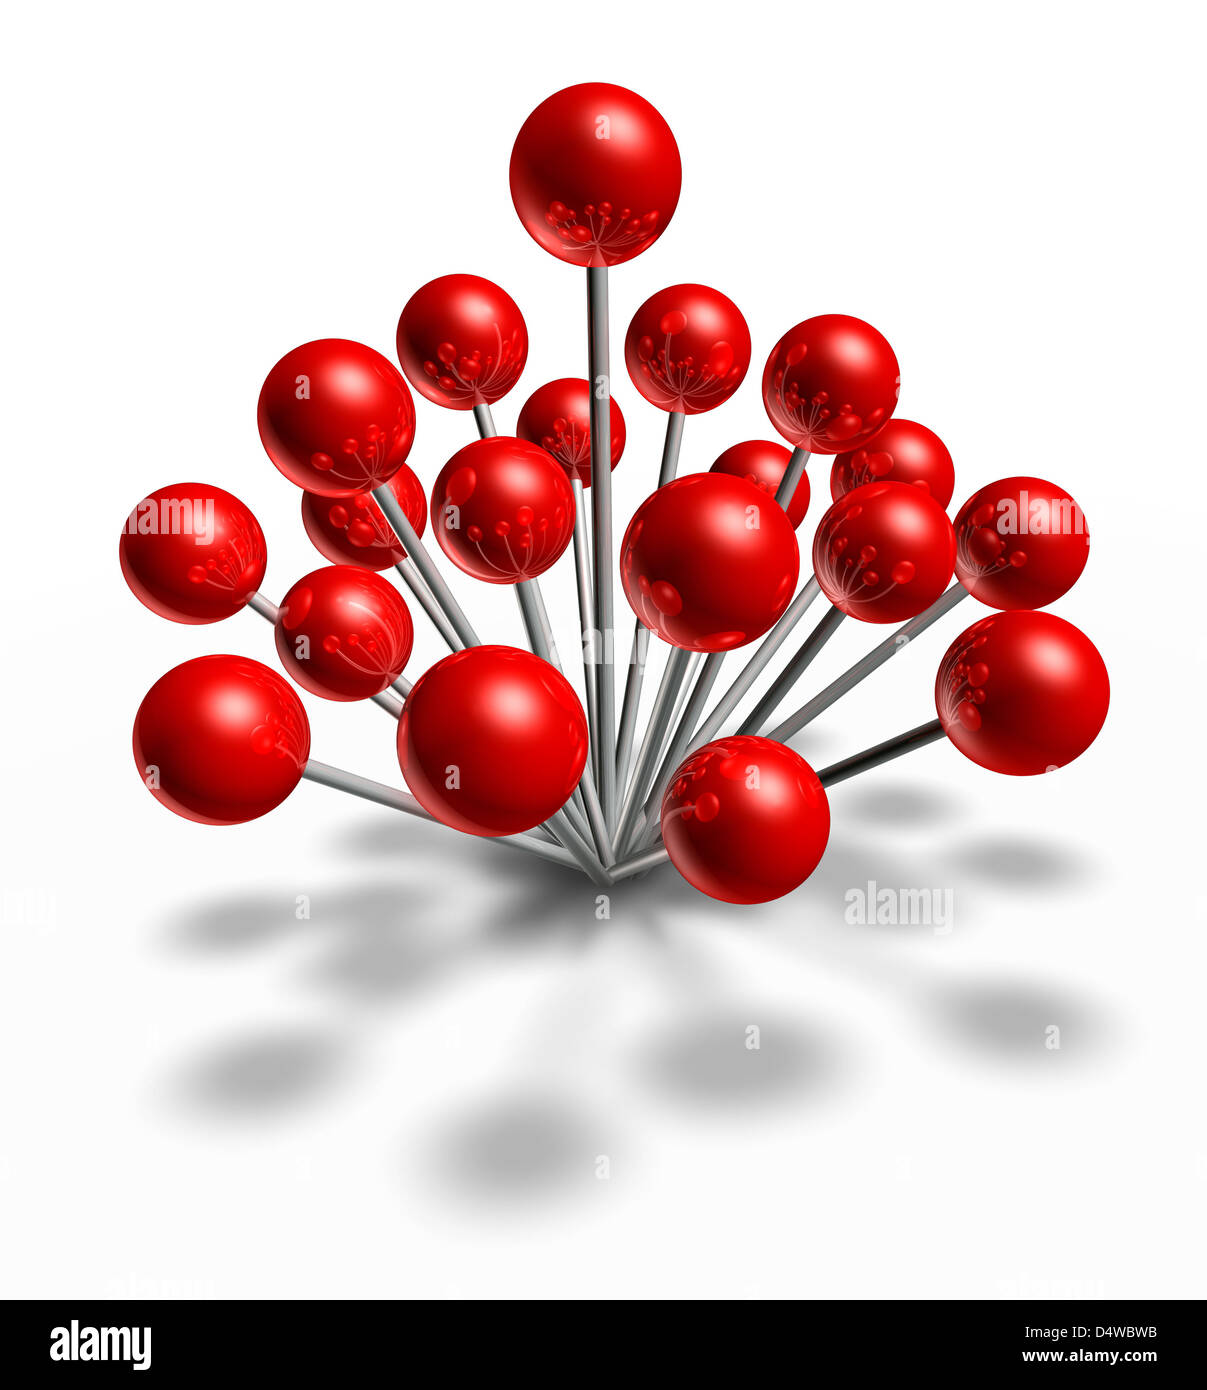 Beliebter Ort und Hot-Spot mit einer Gruppe von roten Pins als Symbol einer Navigation legt und auch ein Konzept der sozialen Popularität Business-Meeting auf einem weißen Hintergrund zu positionieren. Stockfoto